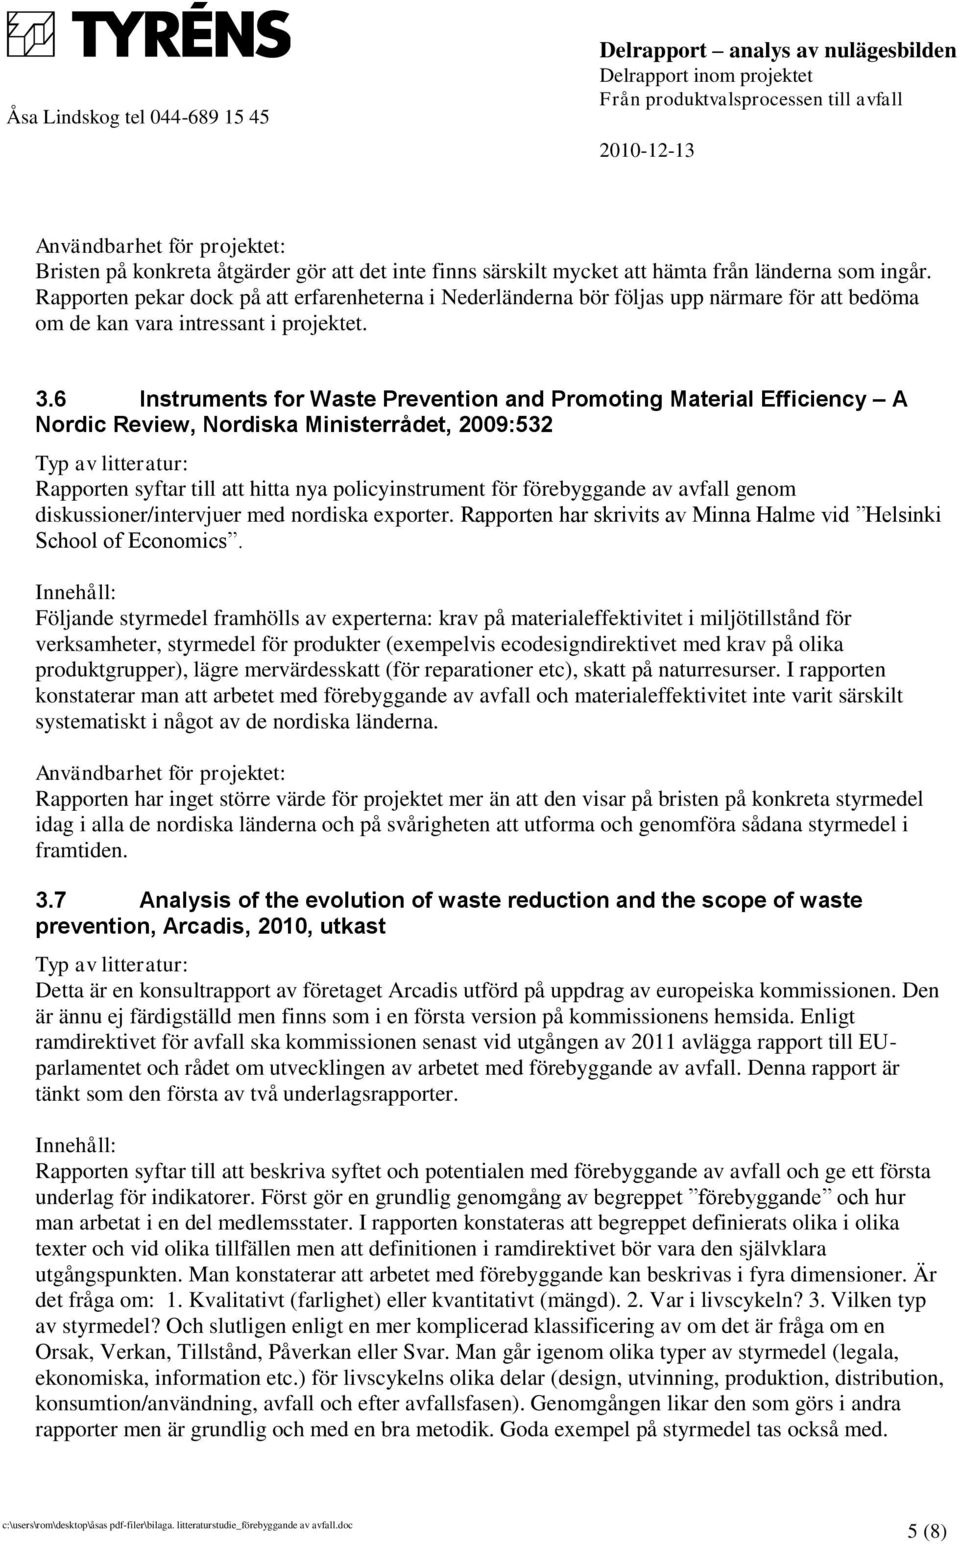 6 Instruments for Waste Prevention and Promoting Material Efficiency A Nordic Review, Nordiska Ministerrådet, 2009:532 Rapporten syftar till att hitta nya policyinstrument för förebyggande av avfall